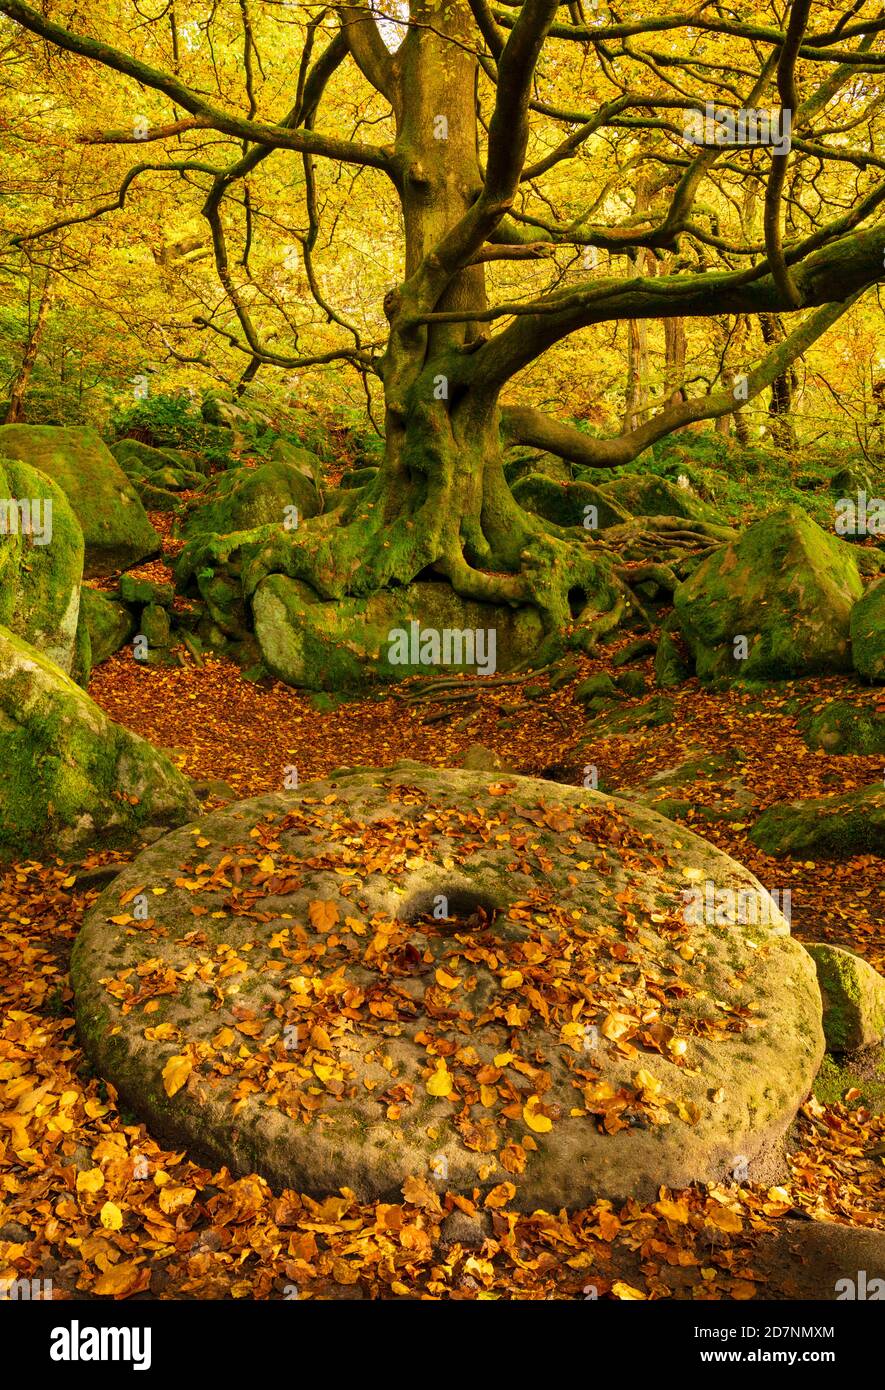 Derbyshire Peak District National Park abandonné en pierre de moulin couverte de feuilles d'automne déchue Padley gorge Grindleford Derbyshire Angleterre GB Europe Banque D'Images